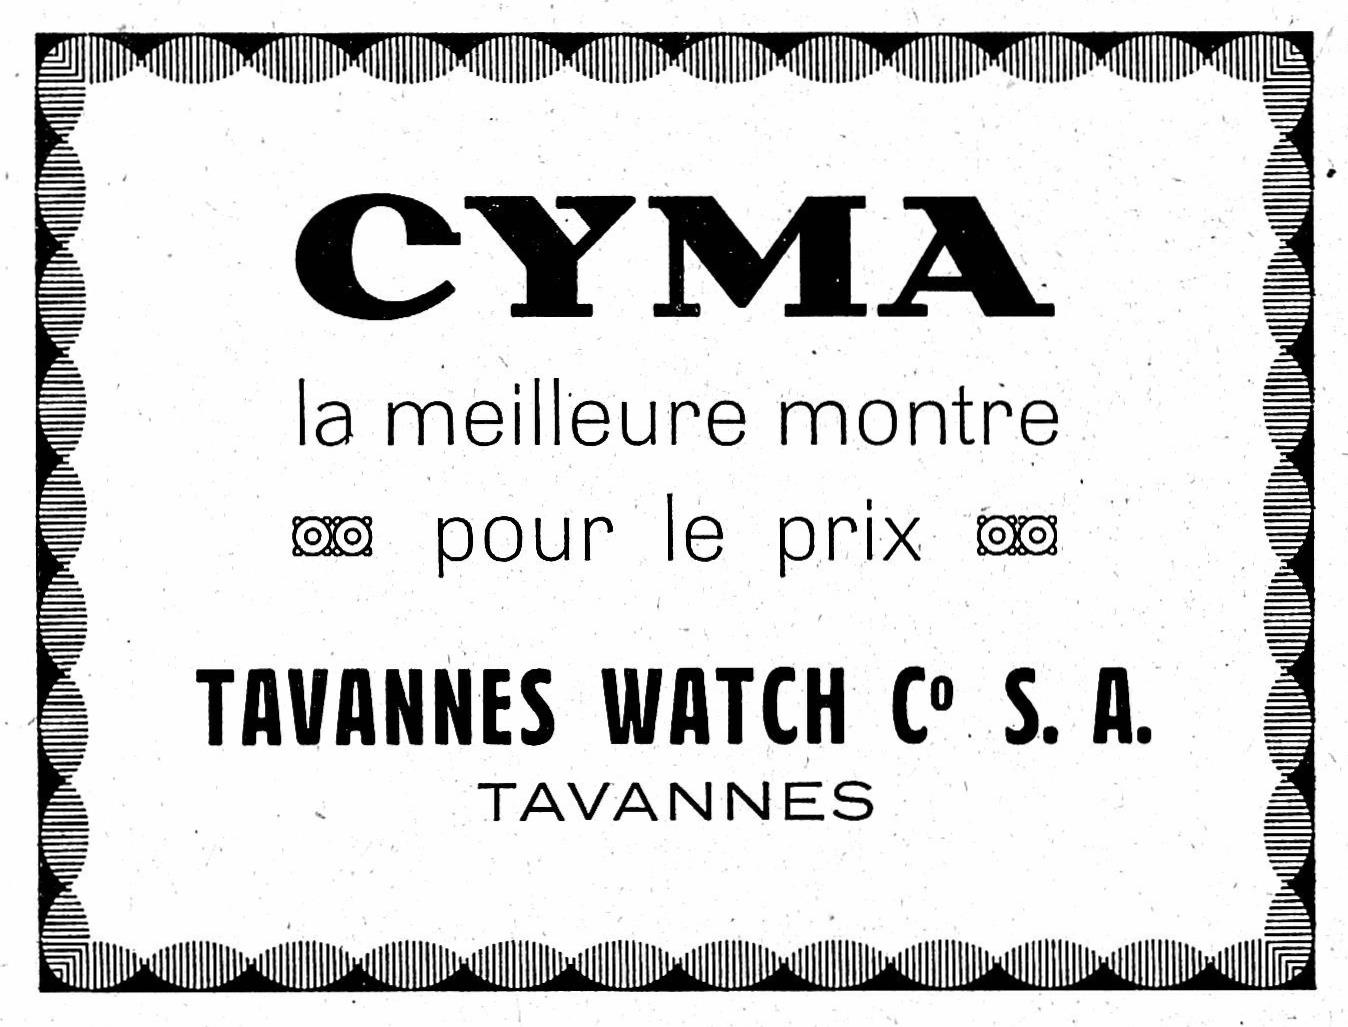 Cyma 1921 69.jpg